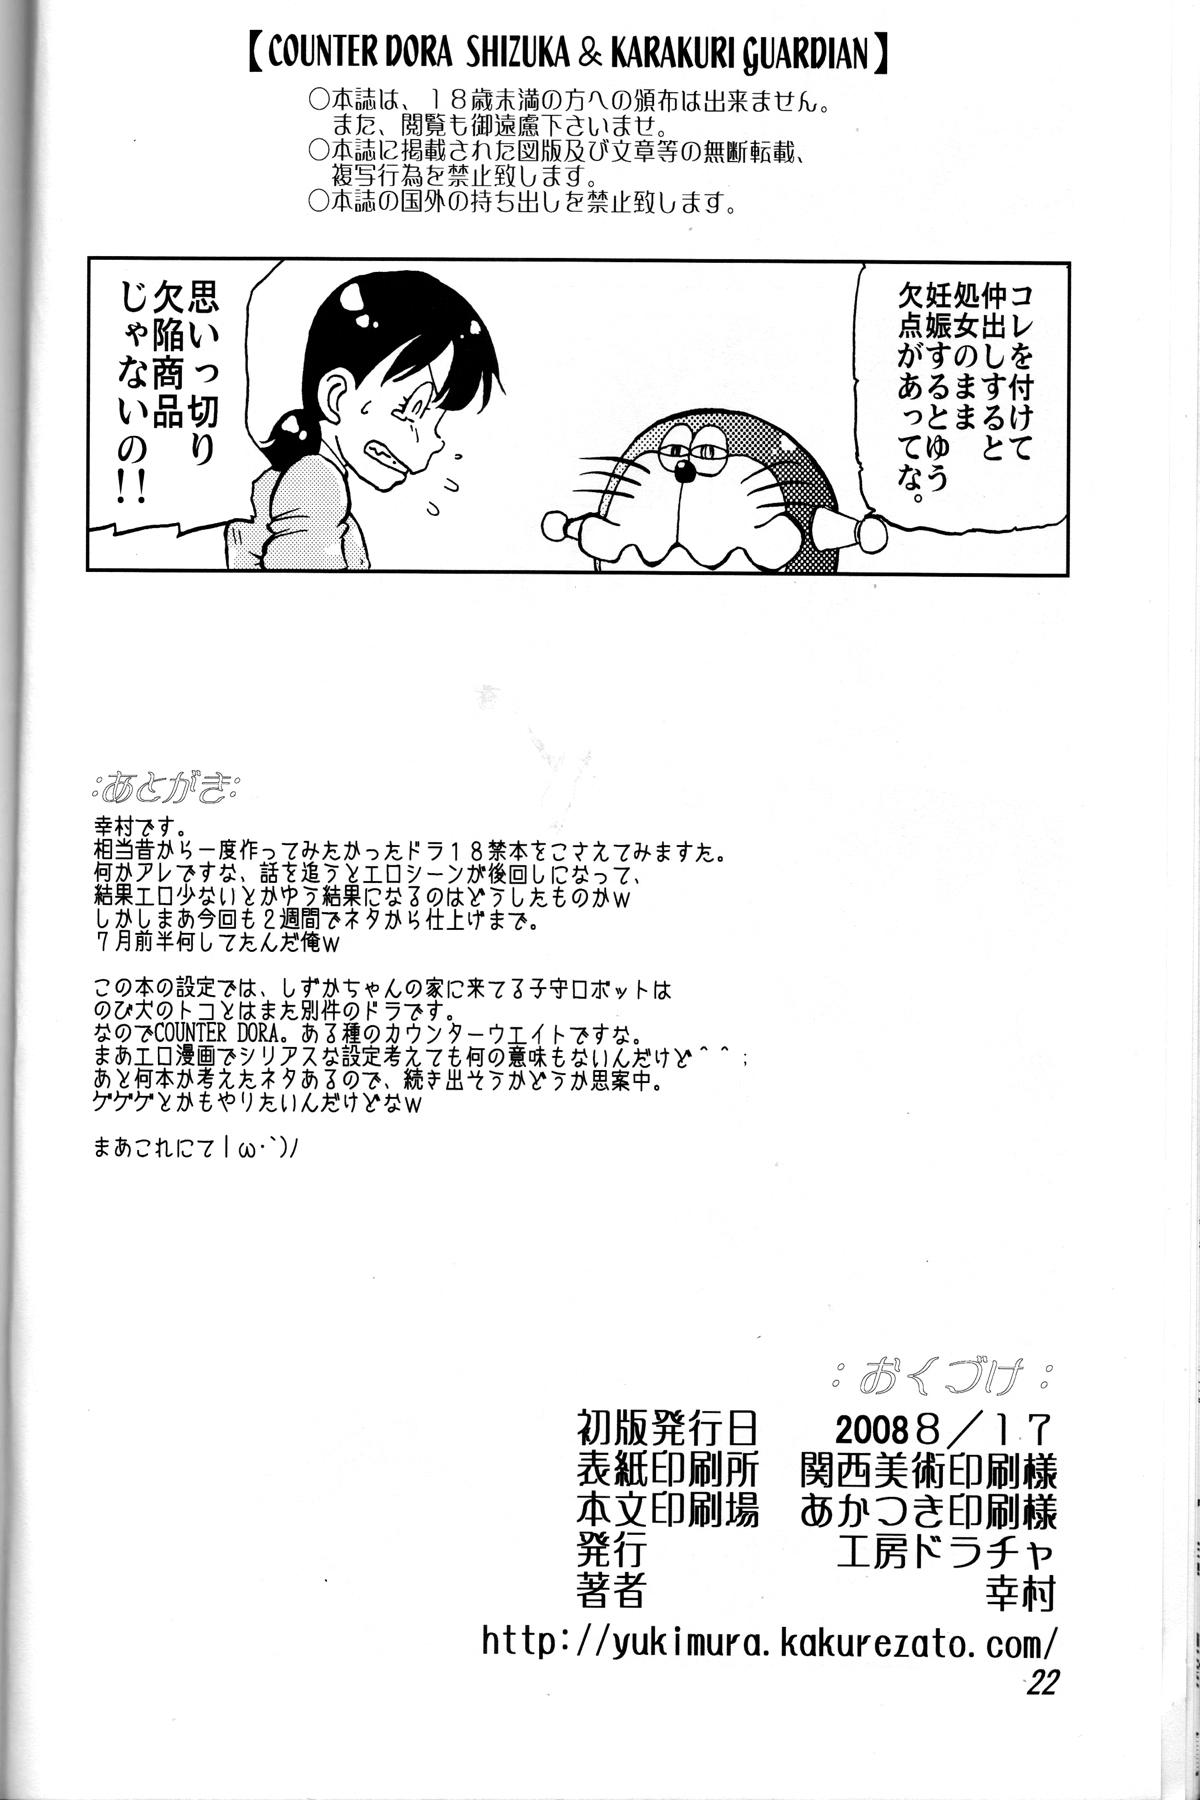 Livecam Shizuka & Kurikuri Guardian - Doraemon Kiteretsu daihyakka Punished - Page 22